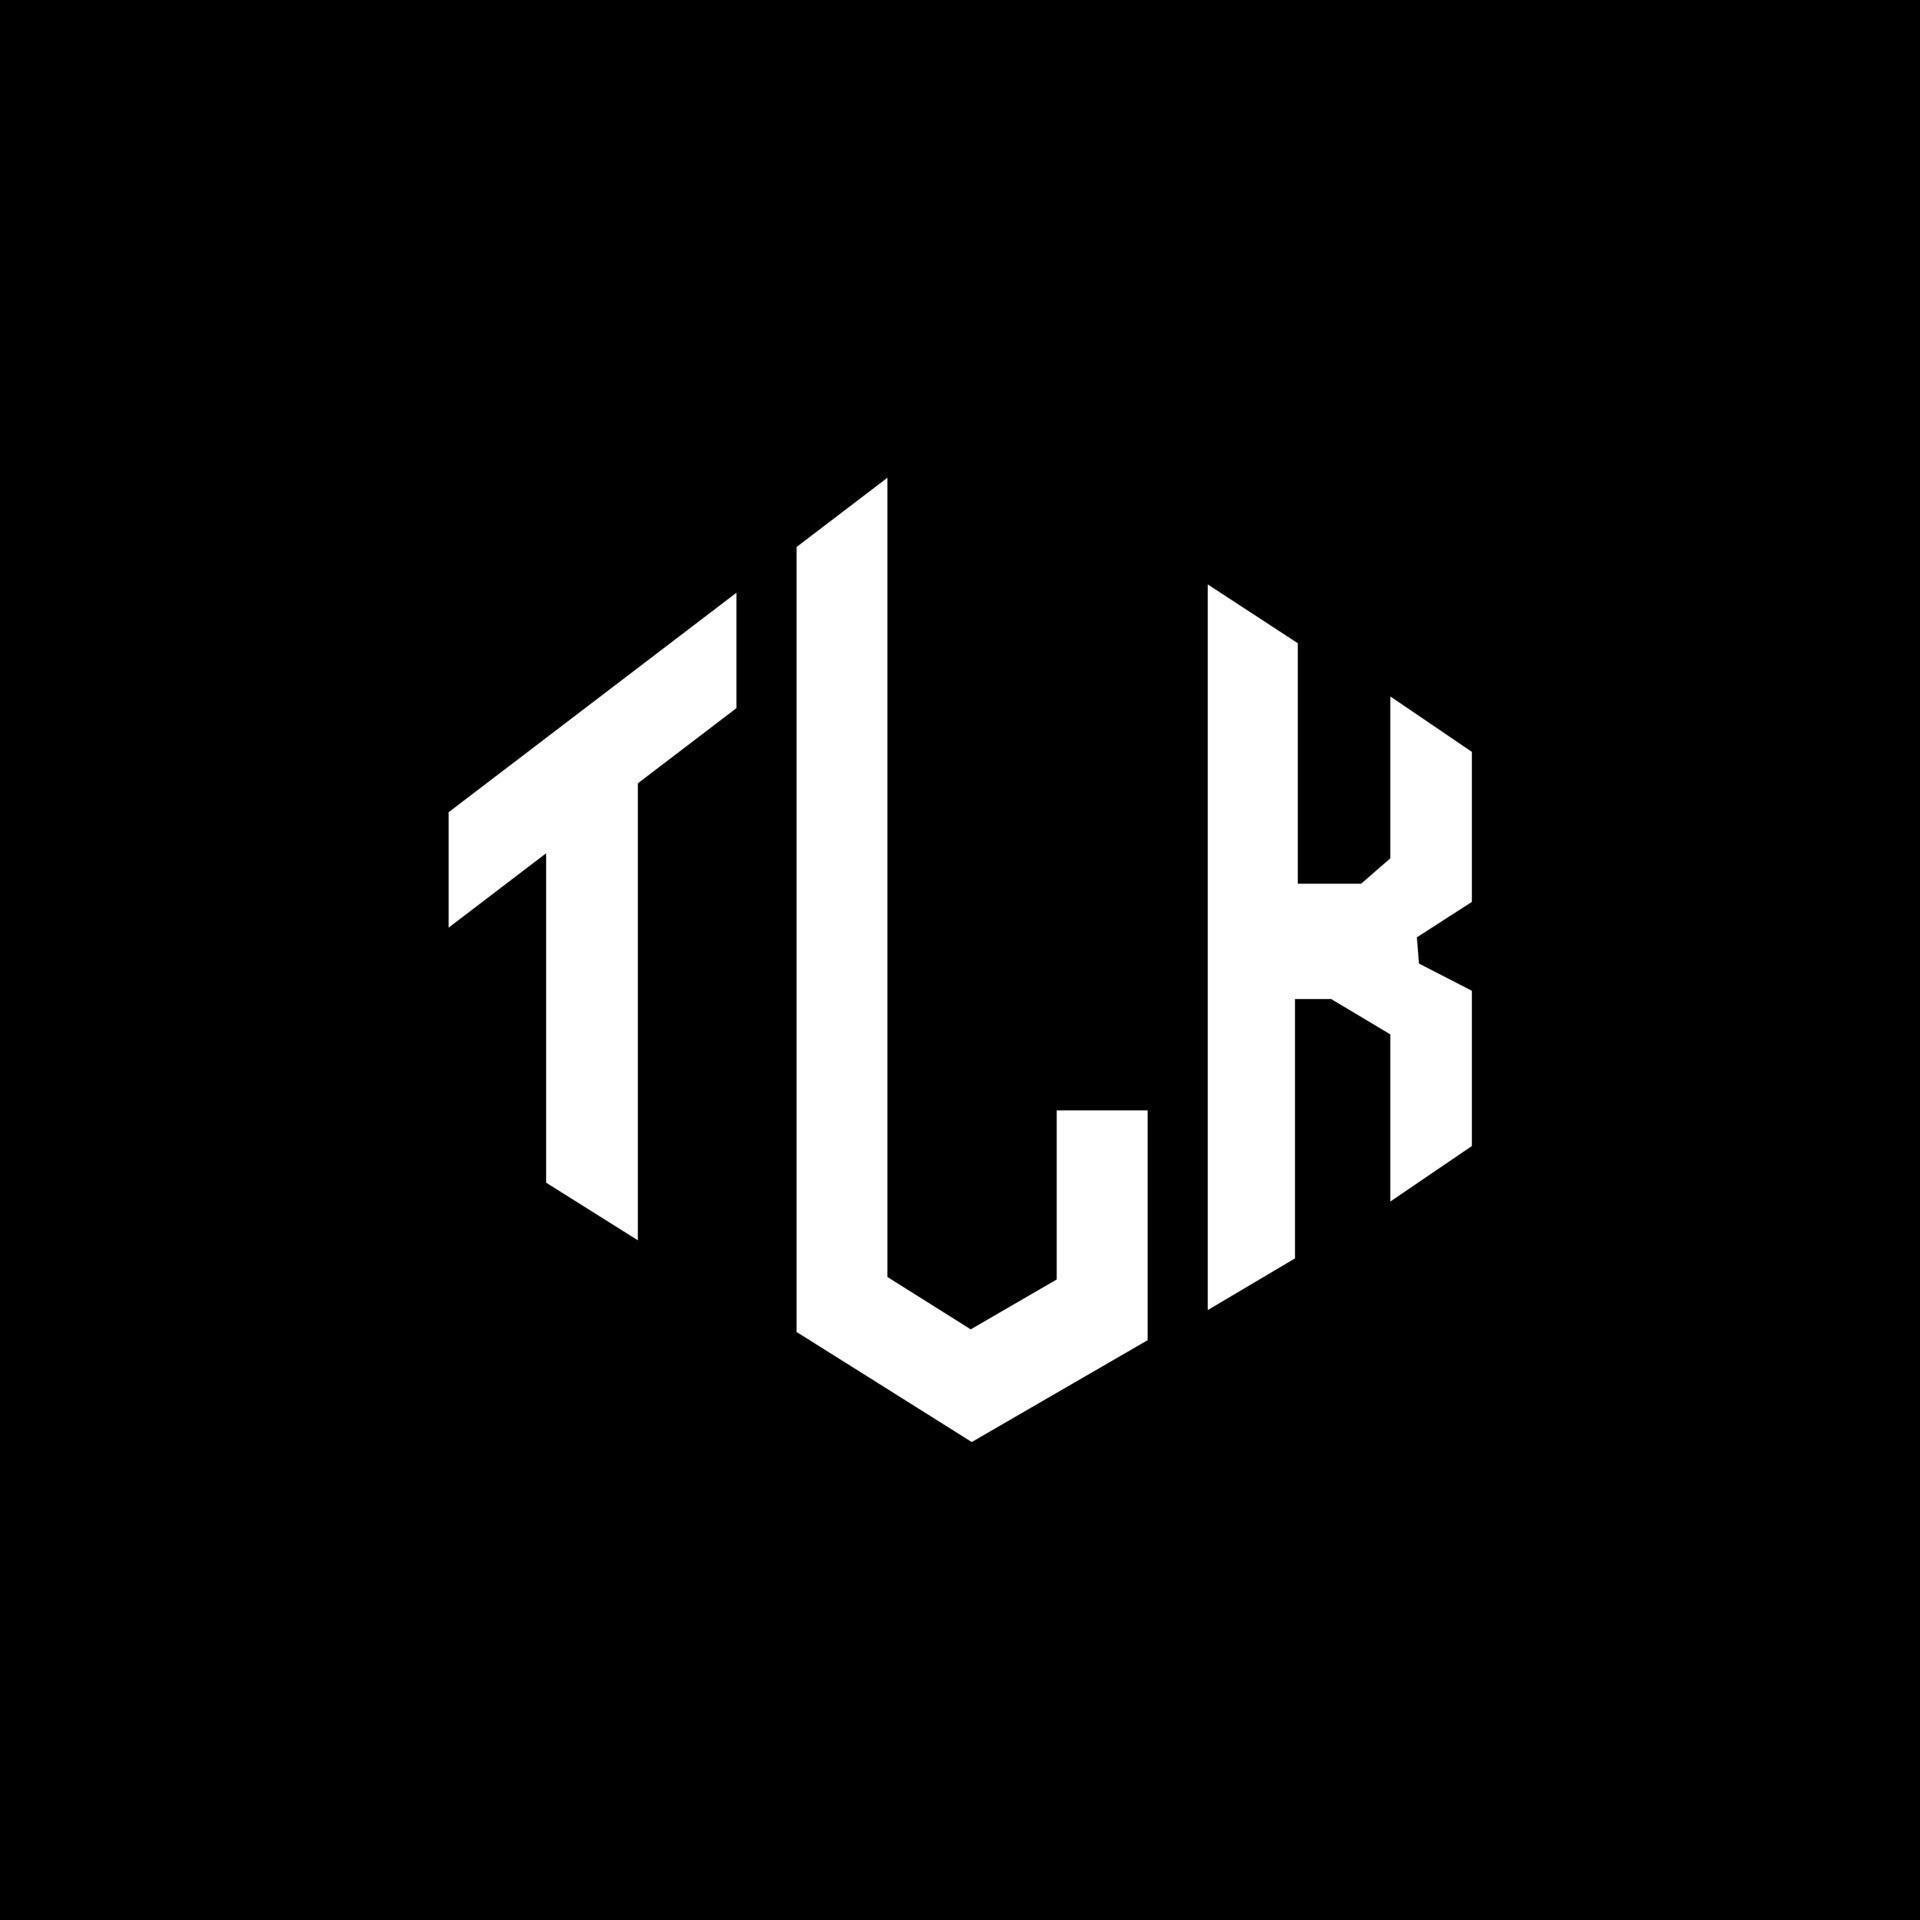 TLK letter logo design with polygon shape. TLK polygon and cube shape ...